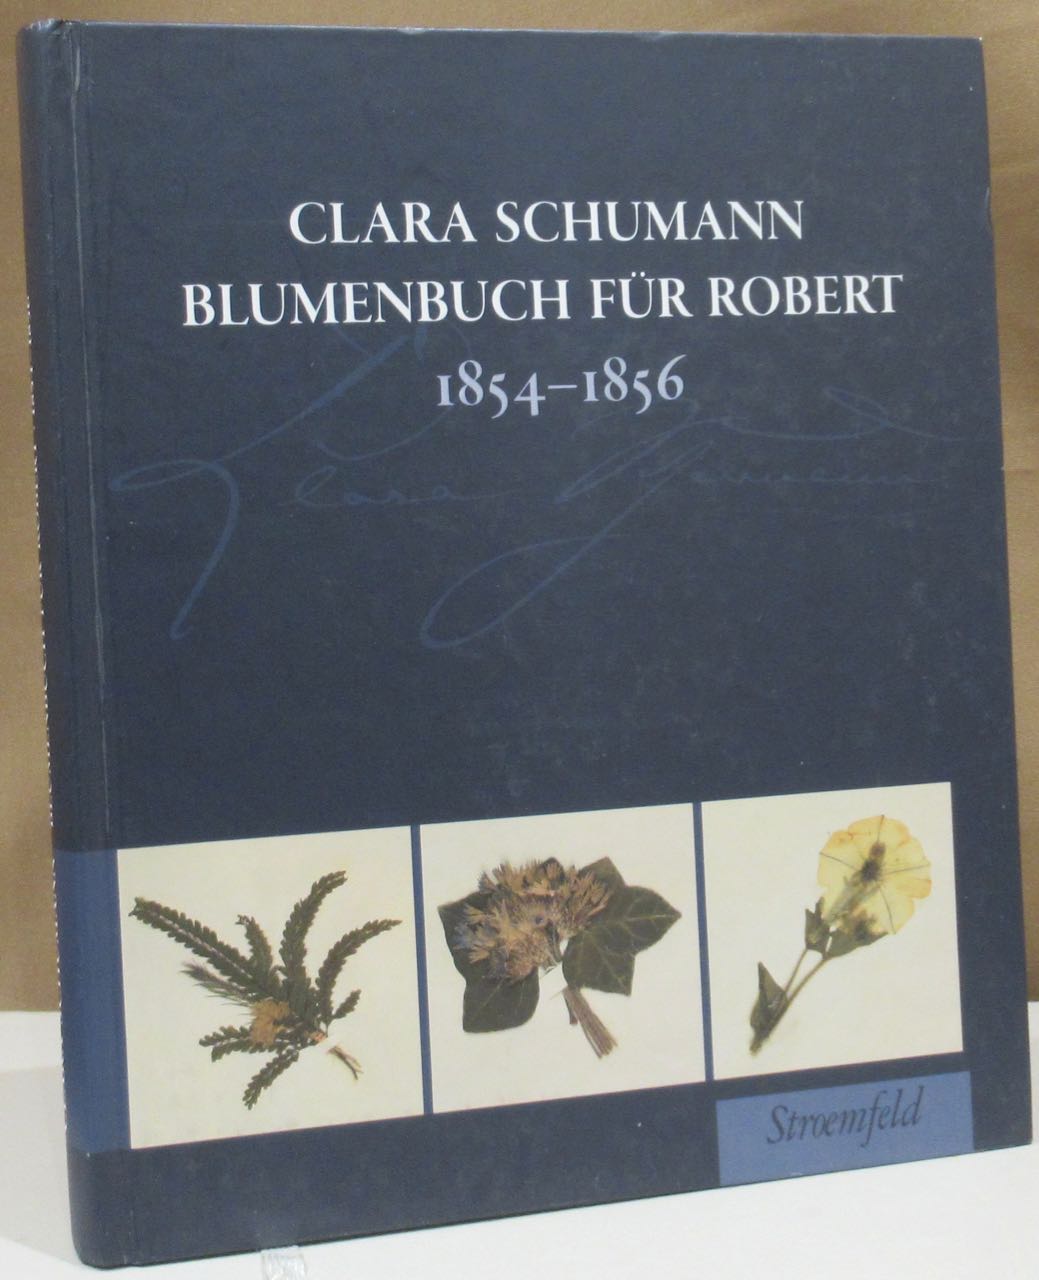 Clara Schumann Blumenbuch für Robert. 1854 - 1856. Hrsg. von Gerd Neuhaus und Ingrid Bodsch unter Mitarbeit von Ute Bär und Susanne Kosmale. - Schumann, Clara - Neuhaus, Gerd und Ingrid Bodsch (Hrsg.).